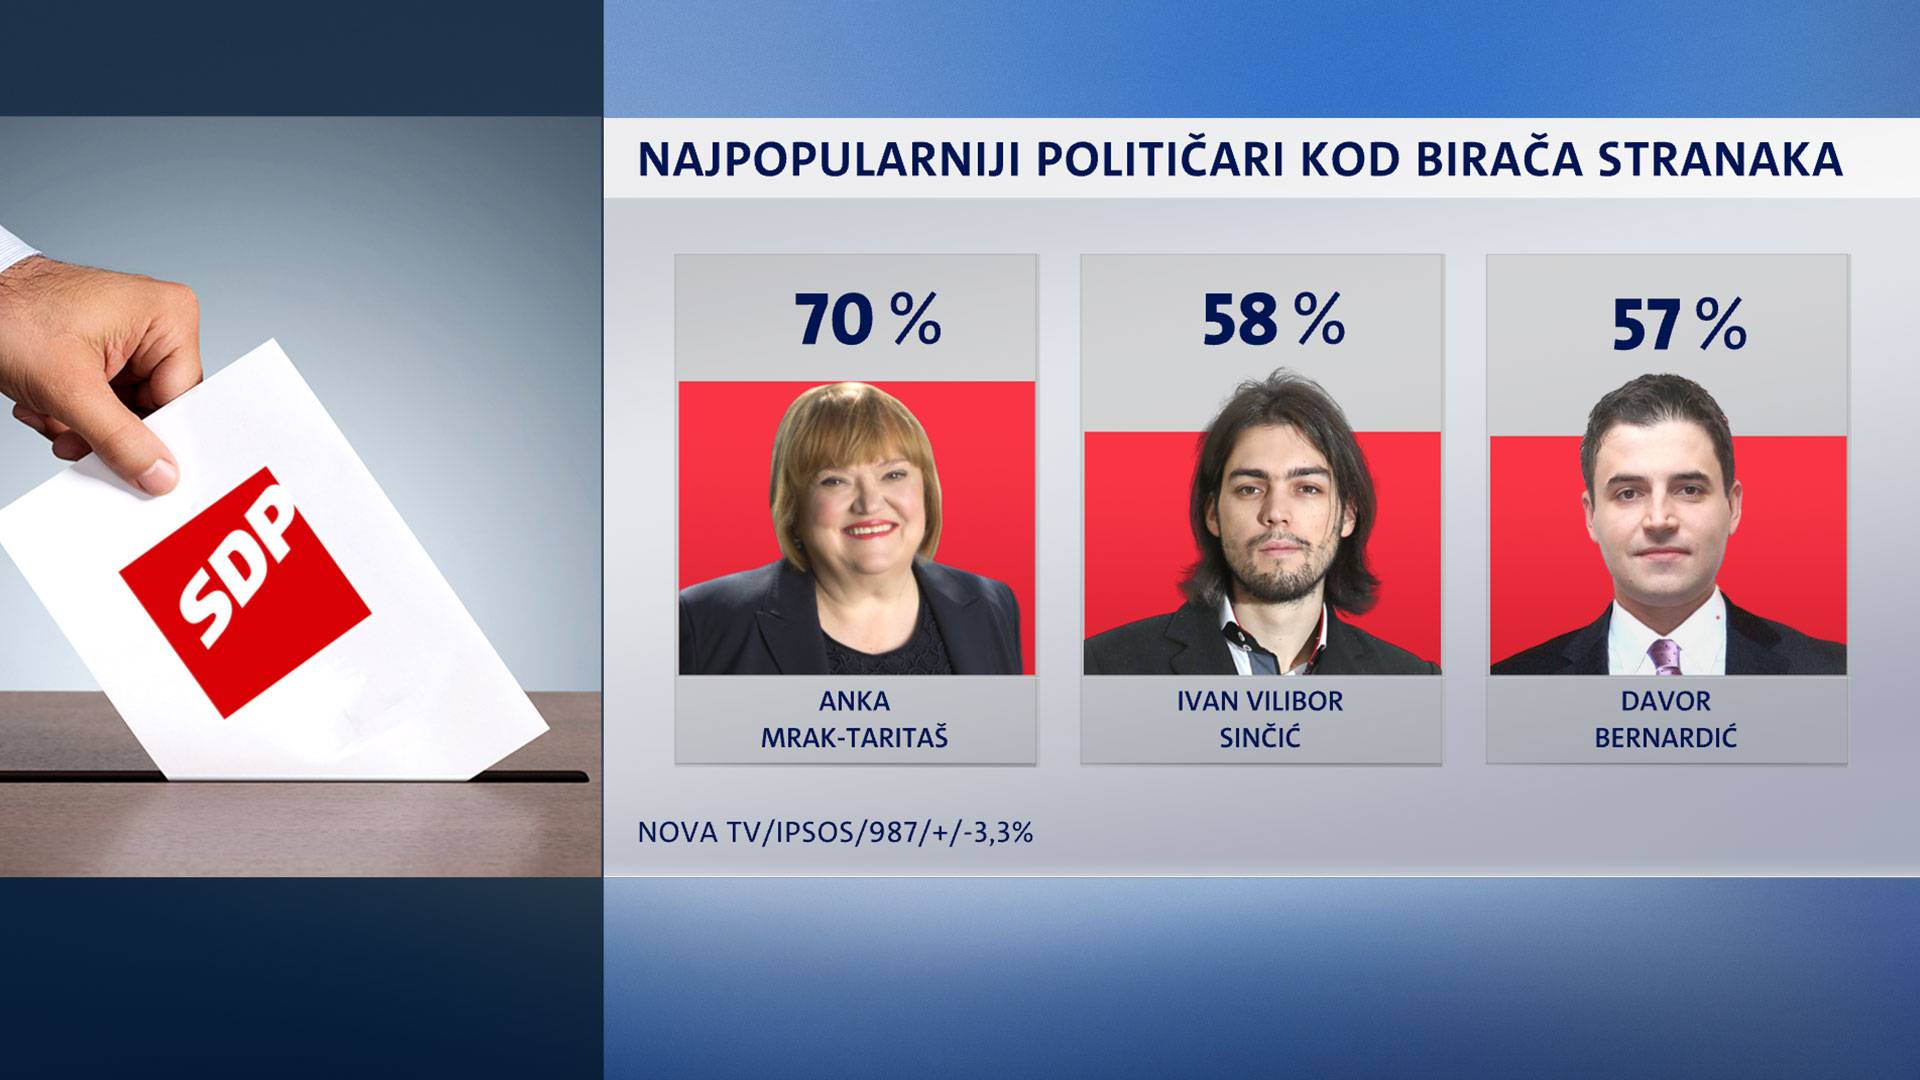 Broj onih koji odobravaju rad Grabar Kitarović se topi...